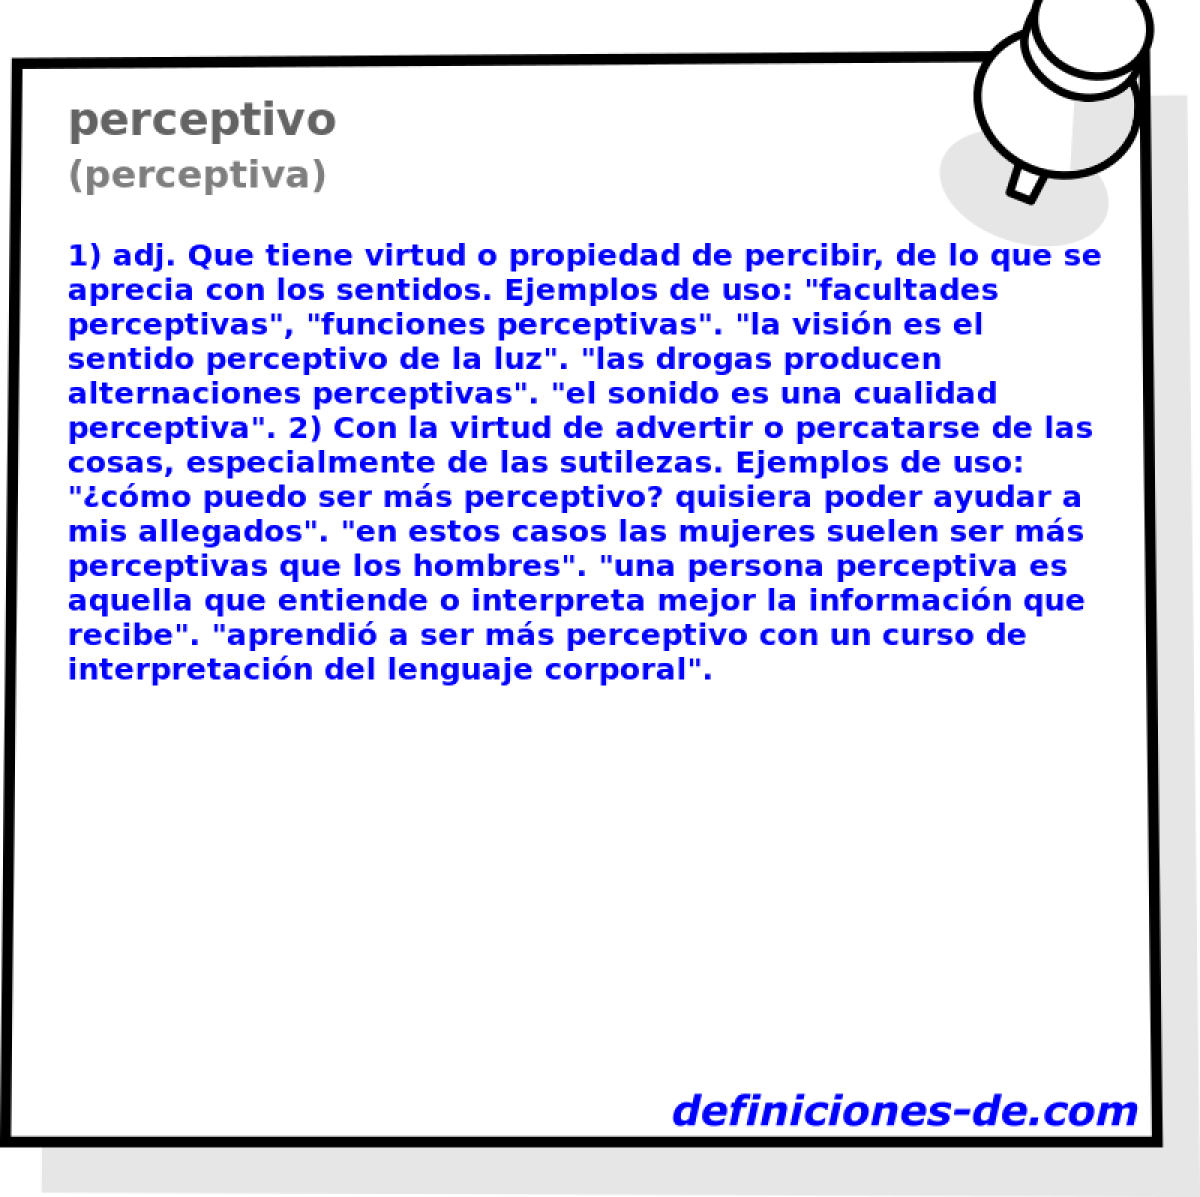 perceptivo (perceptiva)